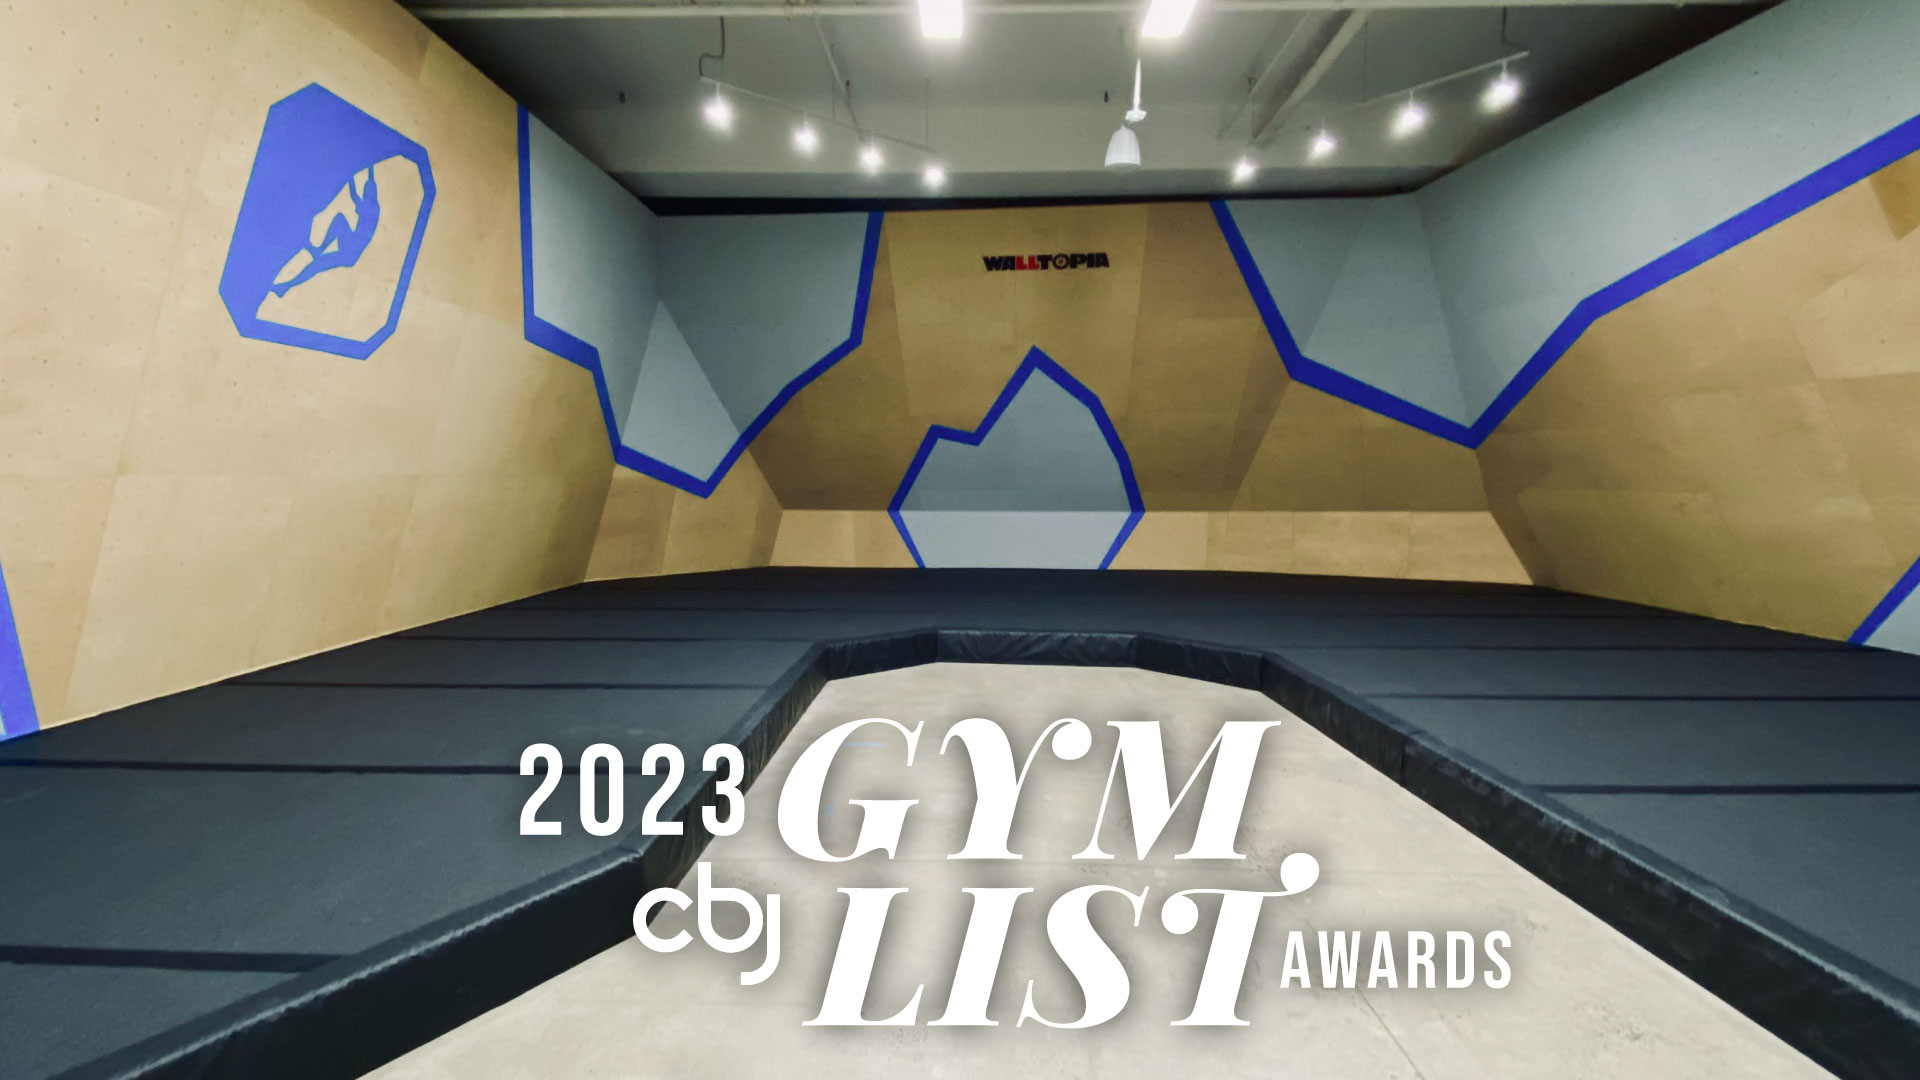 2023 CBJ Gym List Awards